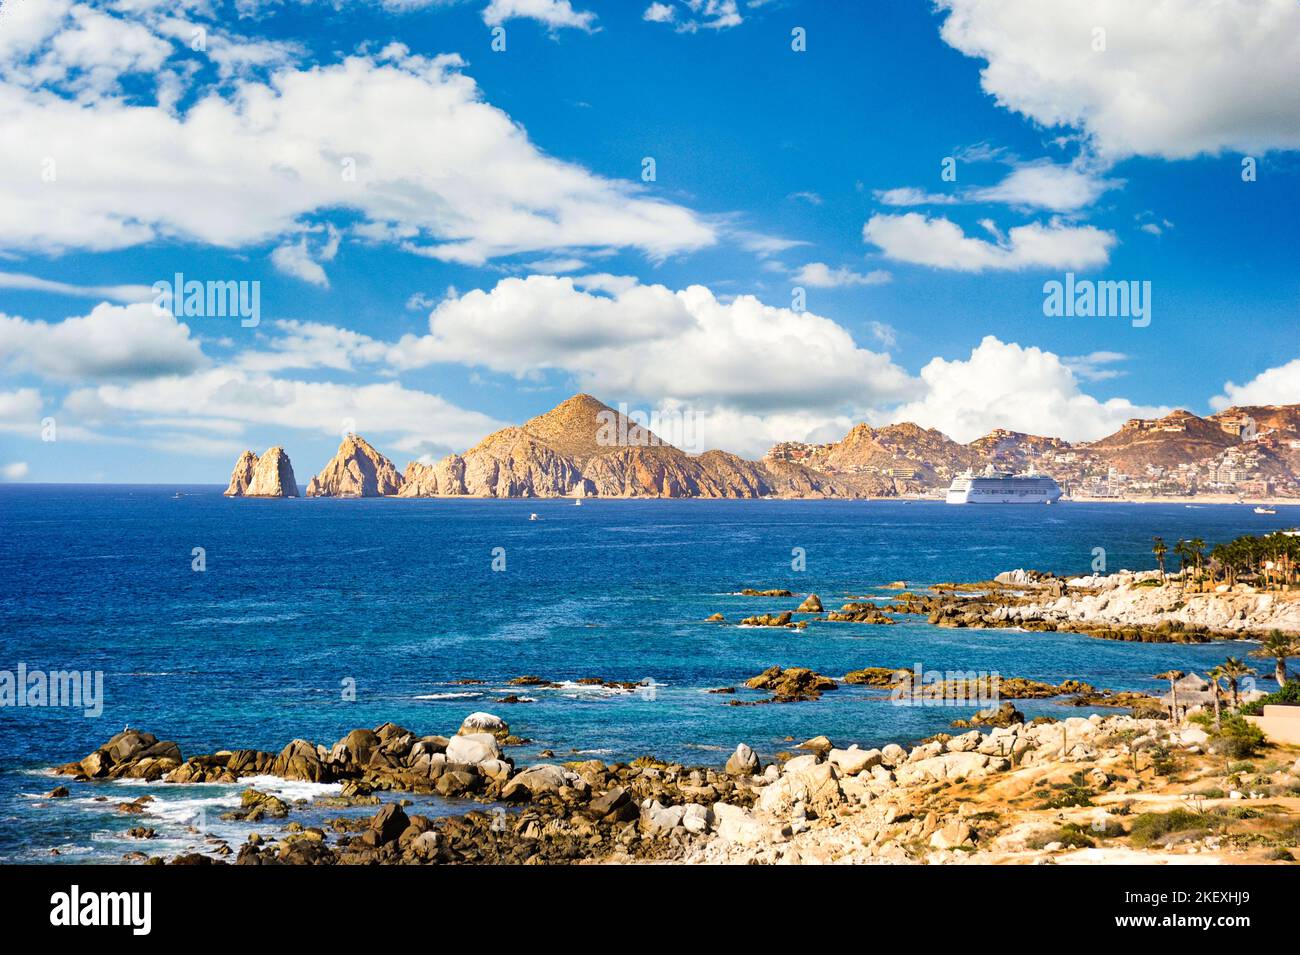 La fine della terra e la punta di Baja California con l'oceano blu cristallo in primo piano. Foto Stock